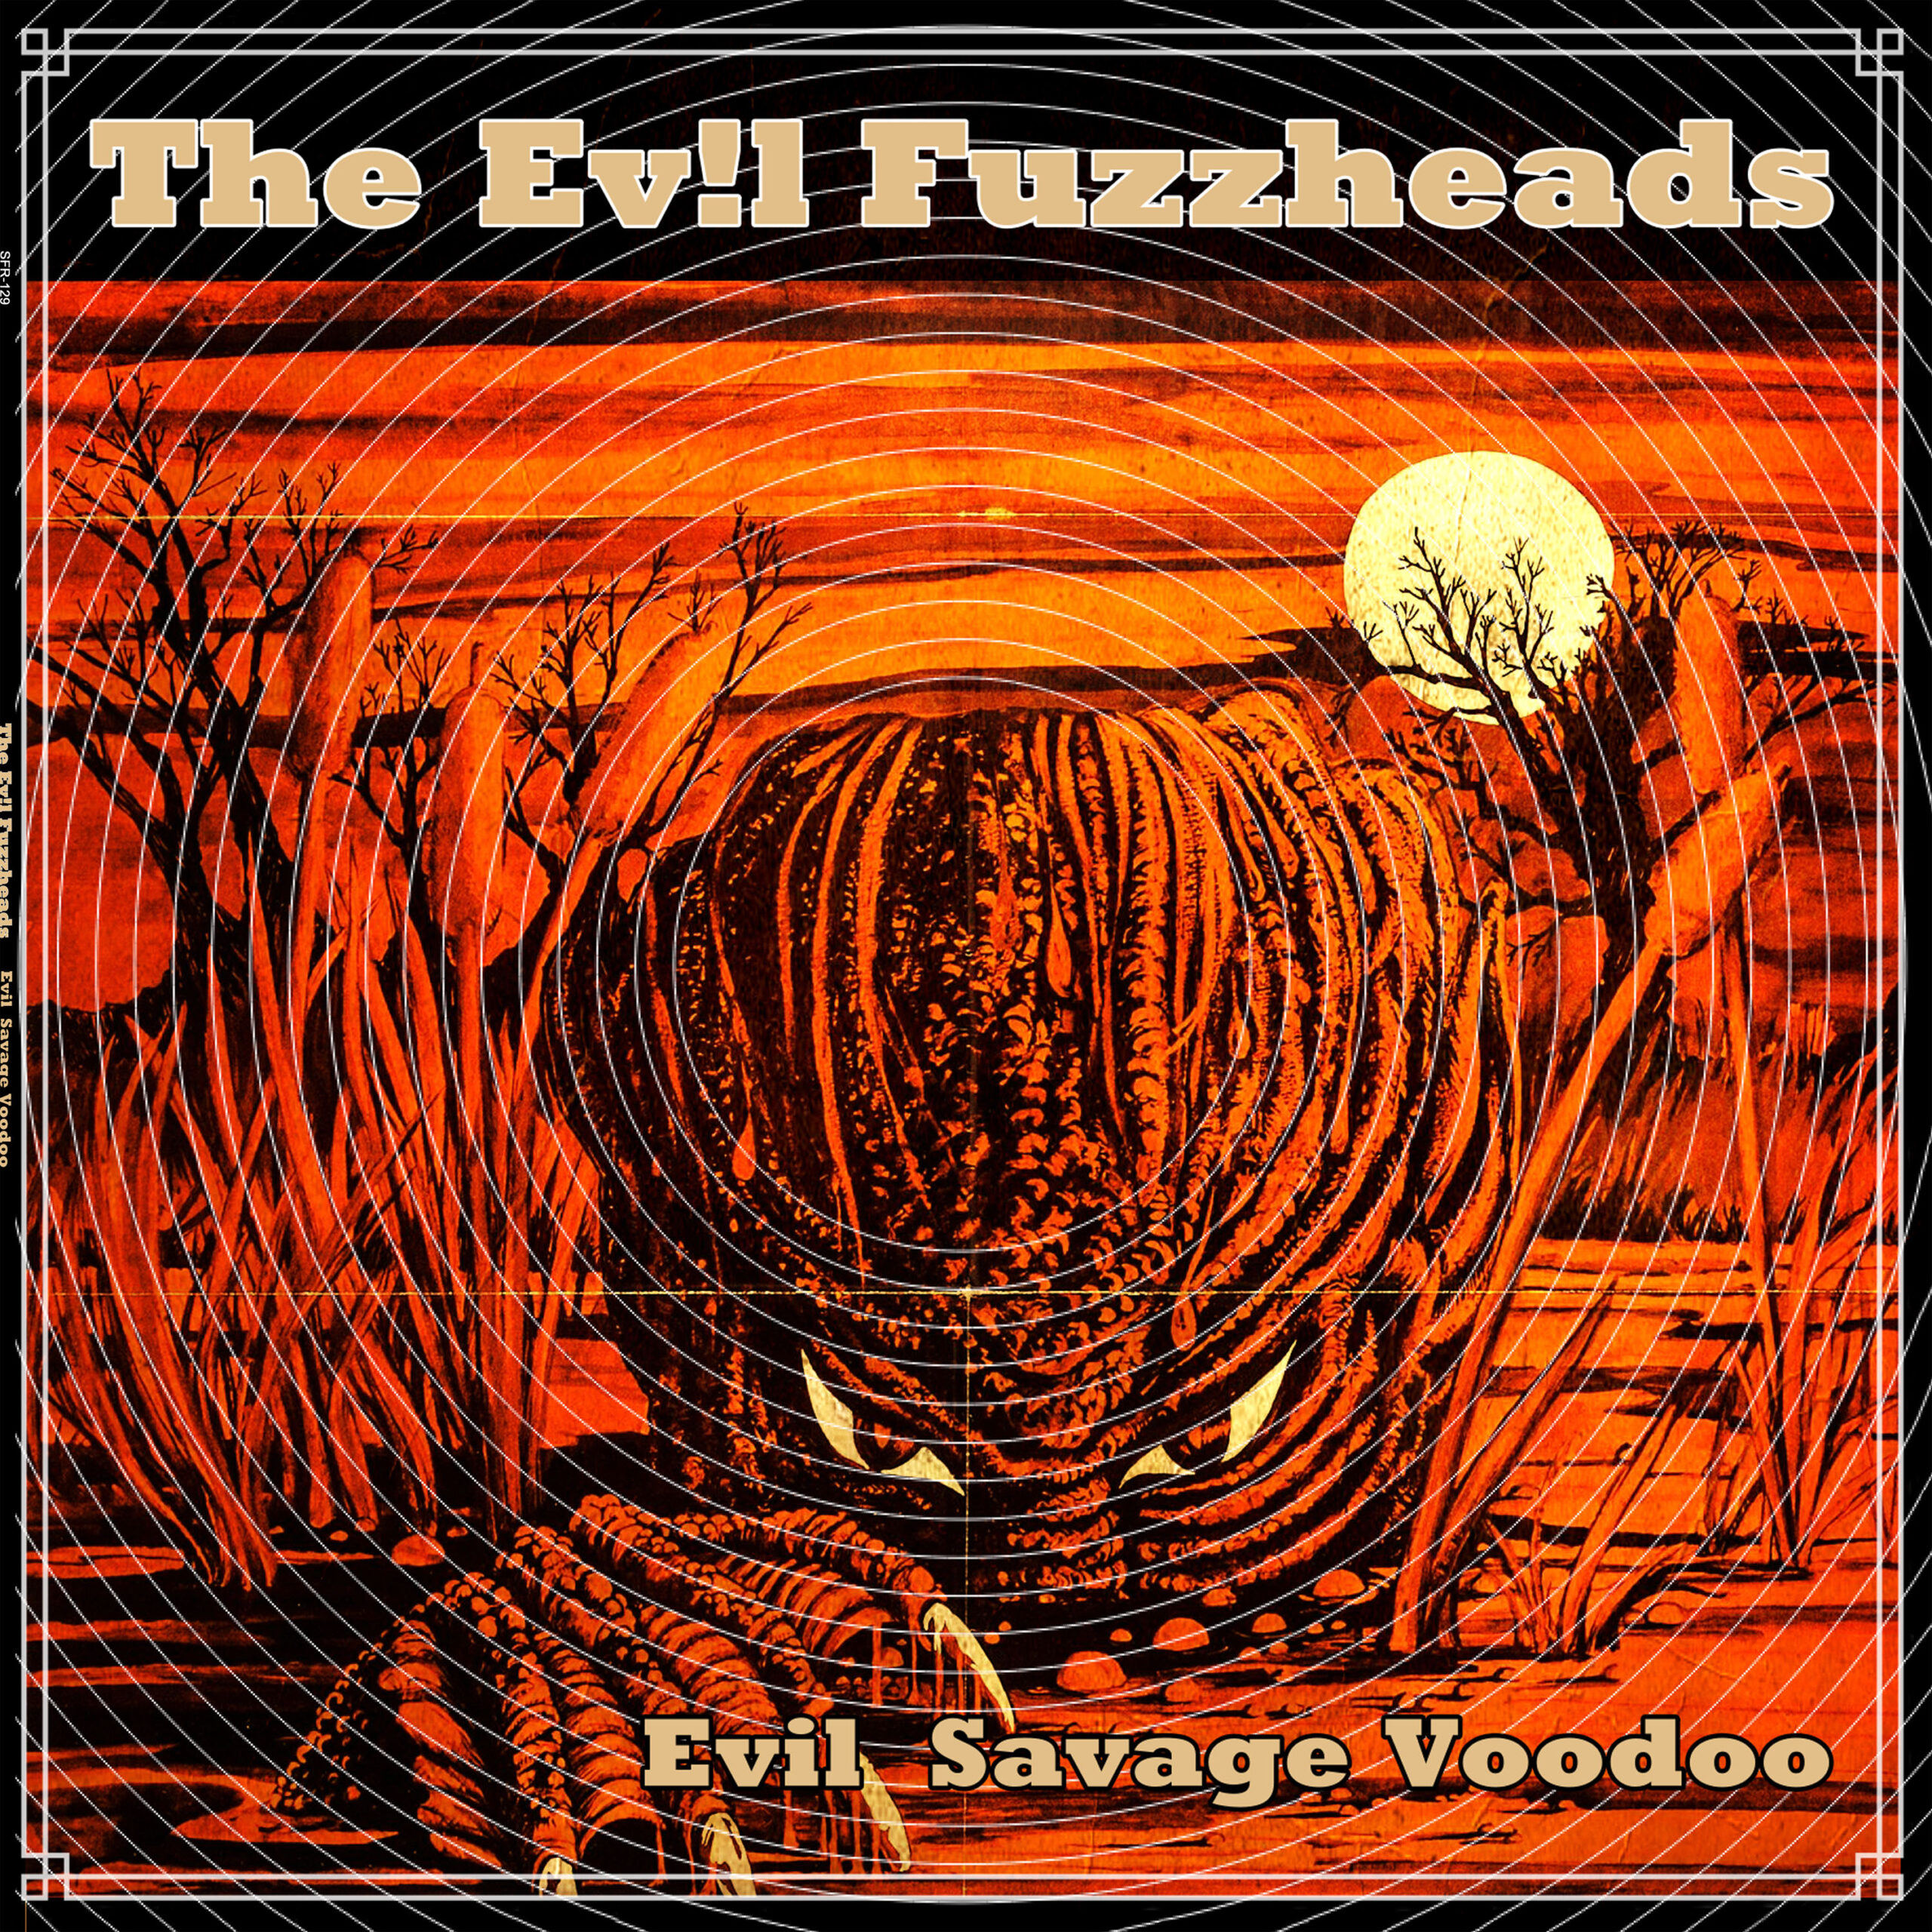 The Evil Fuzzheads - Evil Savage Voodoo LP